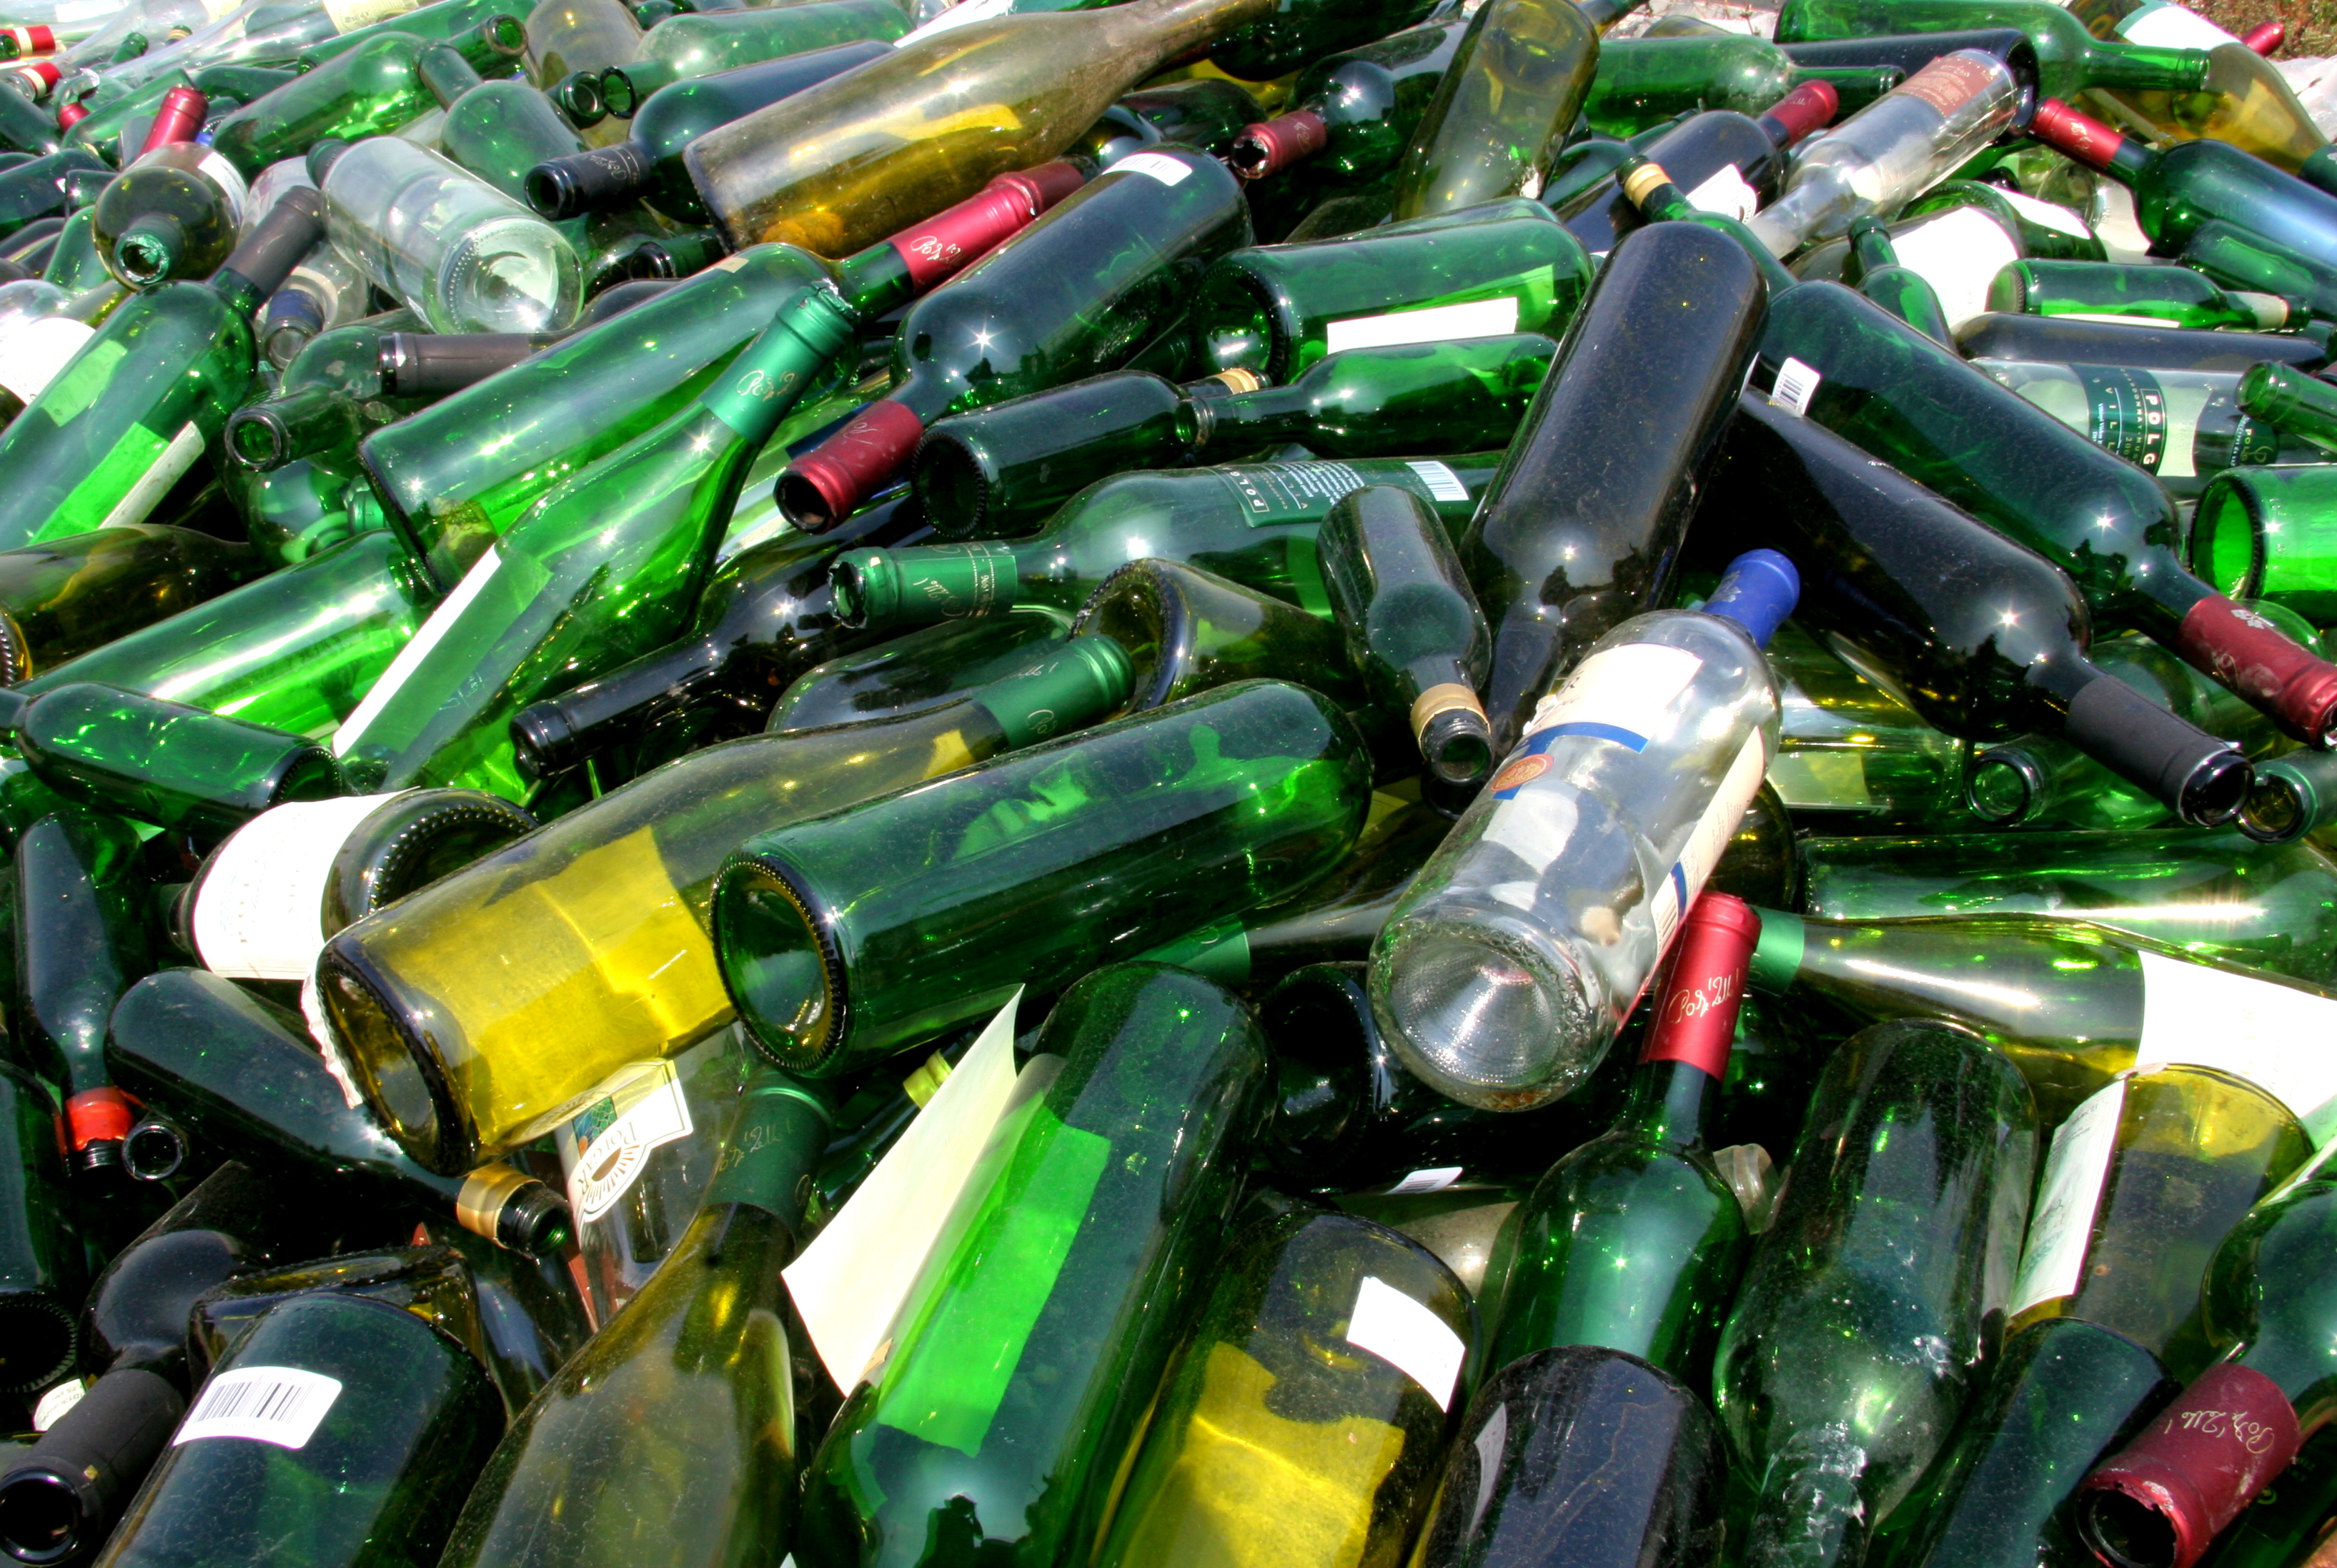 Üveg, csomagolási hulladék átvétel Pécs, Mohács, Villány